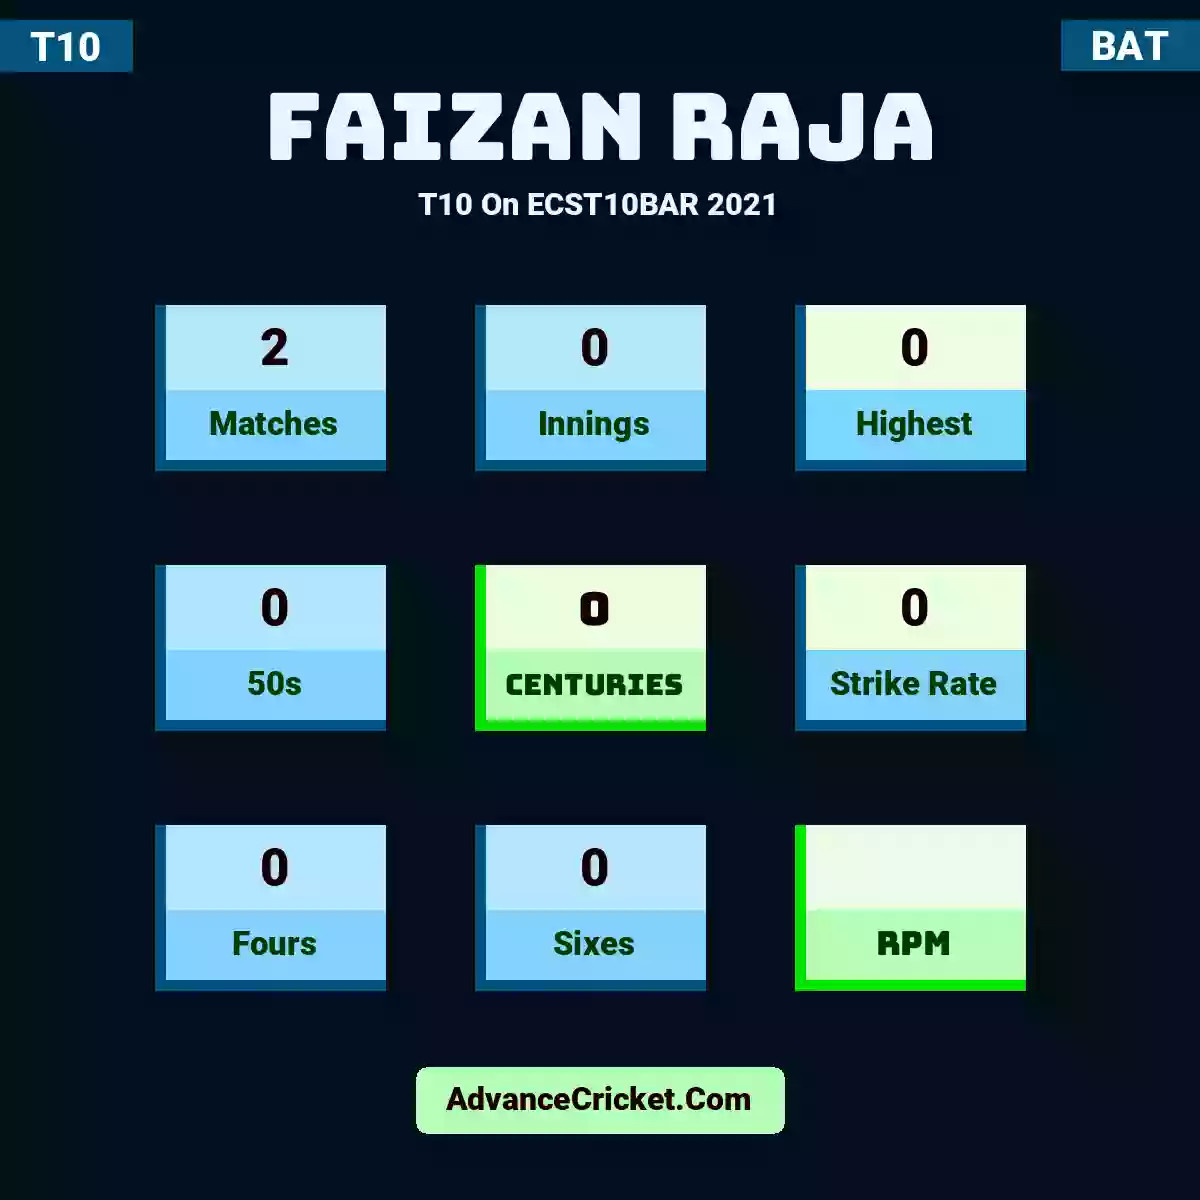 Faizan Raja T10  On ECST10BAR 2021, Faizan Raja played 2 matches, scored 0 runs as highest, 0 half-centuries, and 0 centuries, with a strike rate of 0. F.Raja hit 0 fours and 0 sixes.